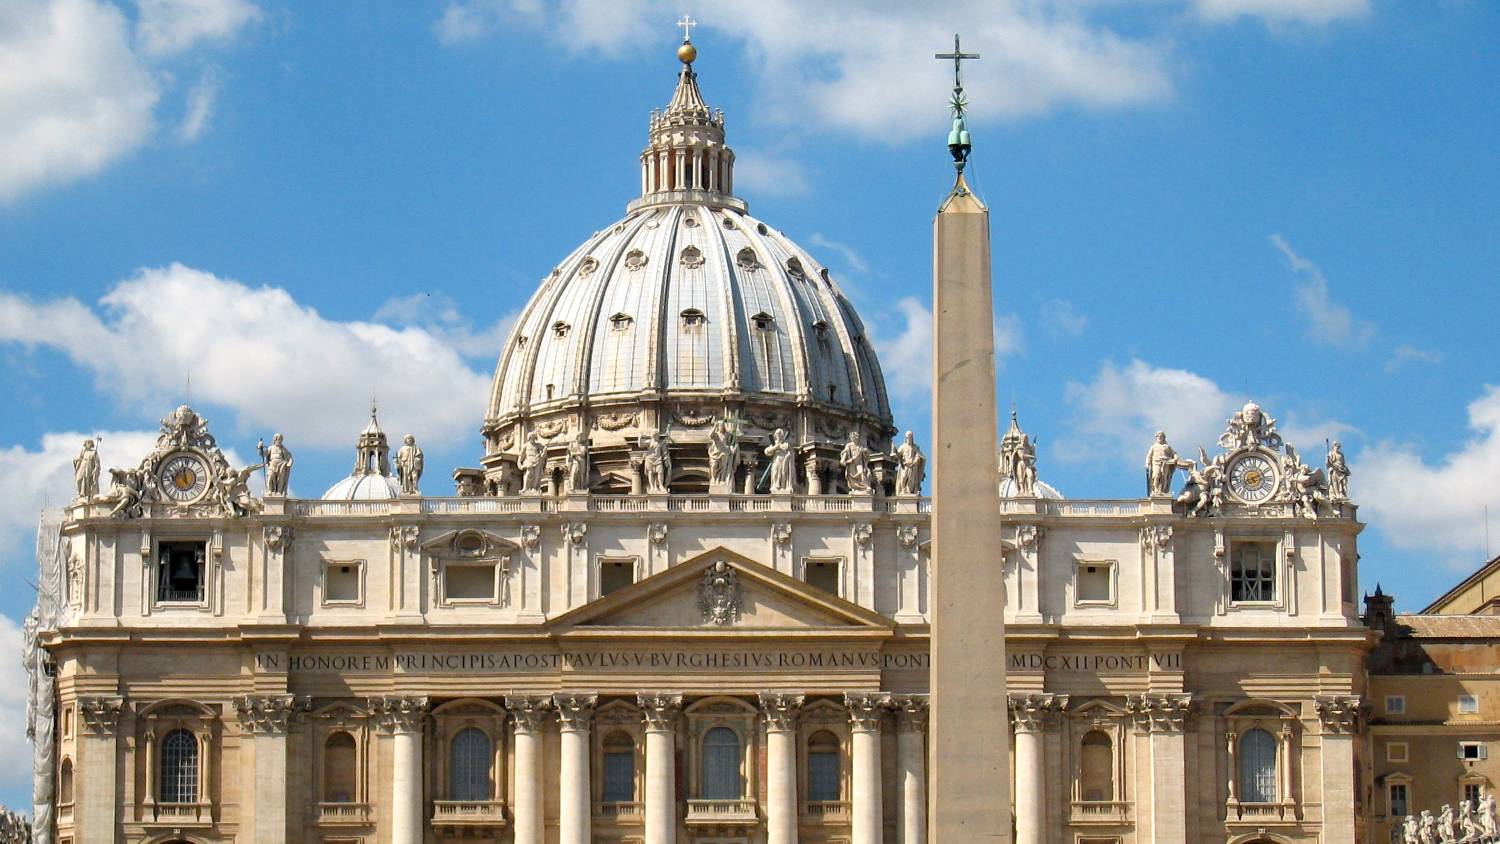 La construction de la basilique dura 150 ans, elle est aujourd’hui visitée par des millions de fidèles (Creative Commons)